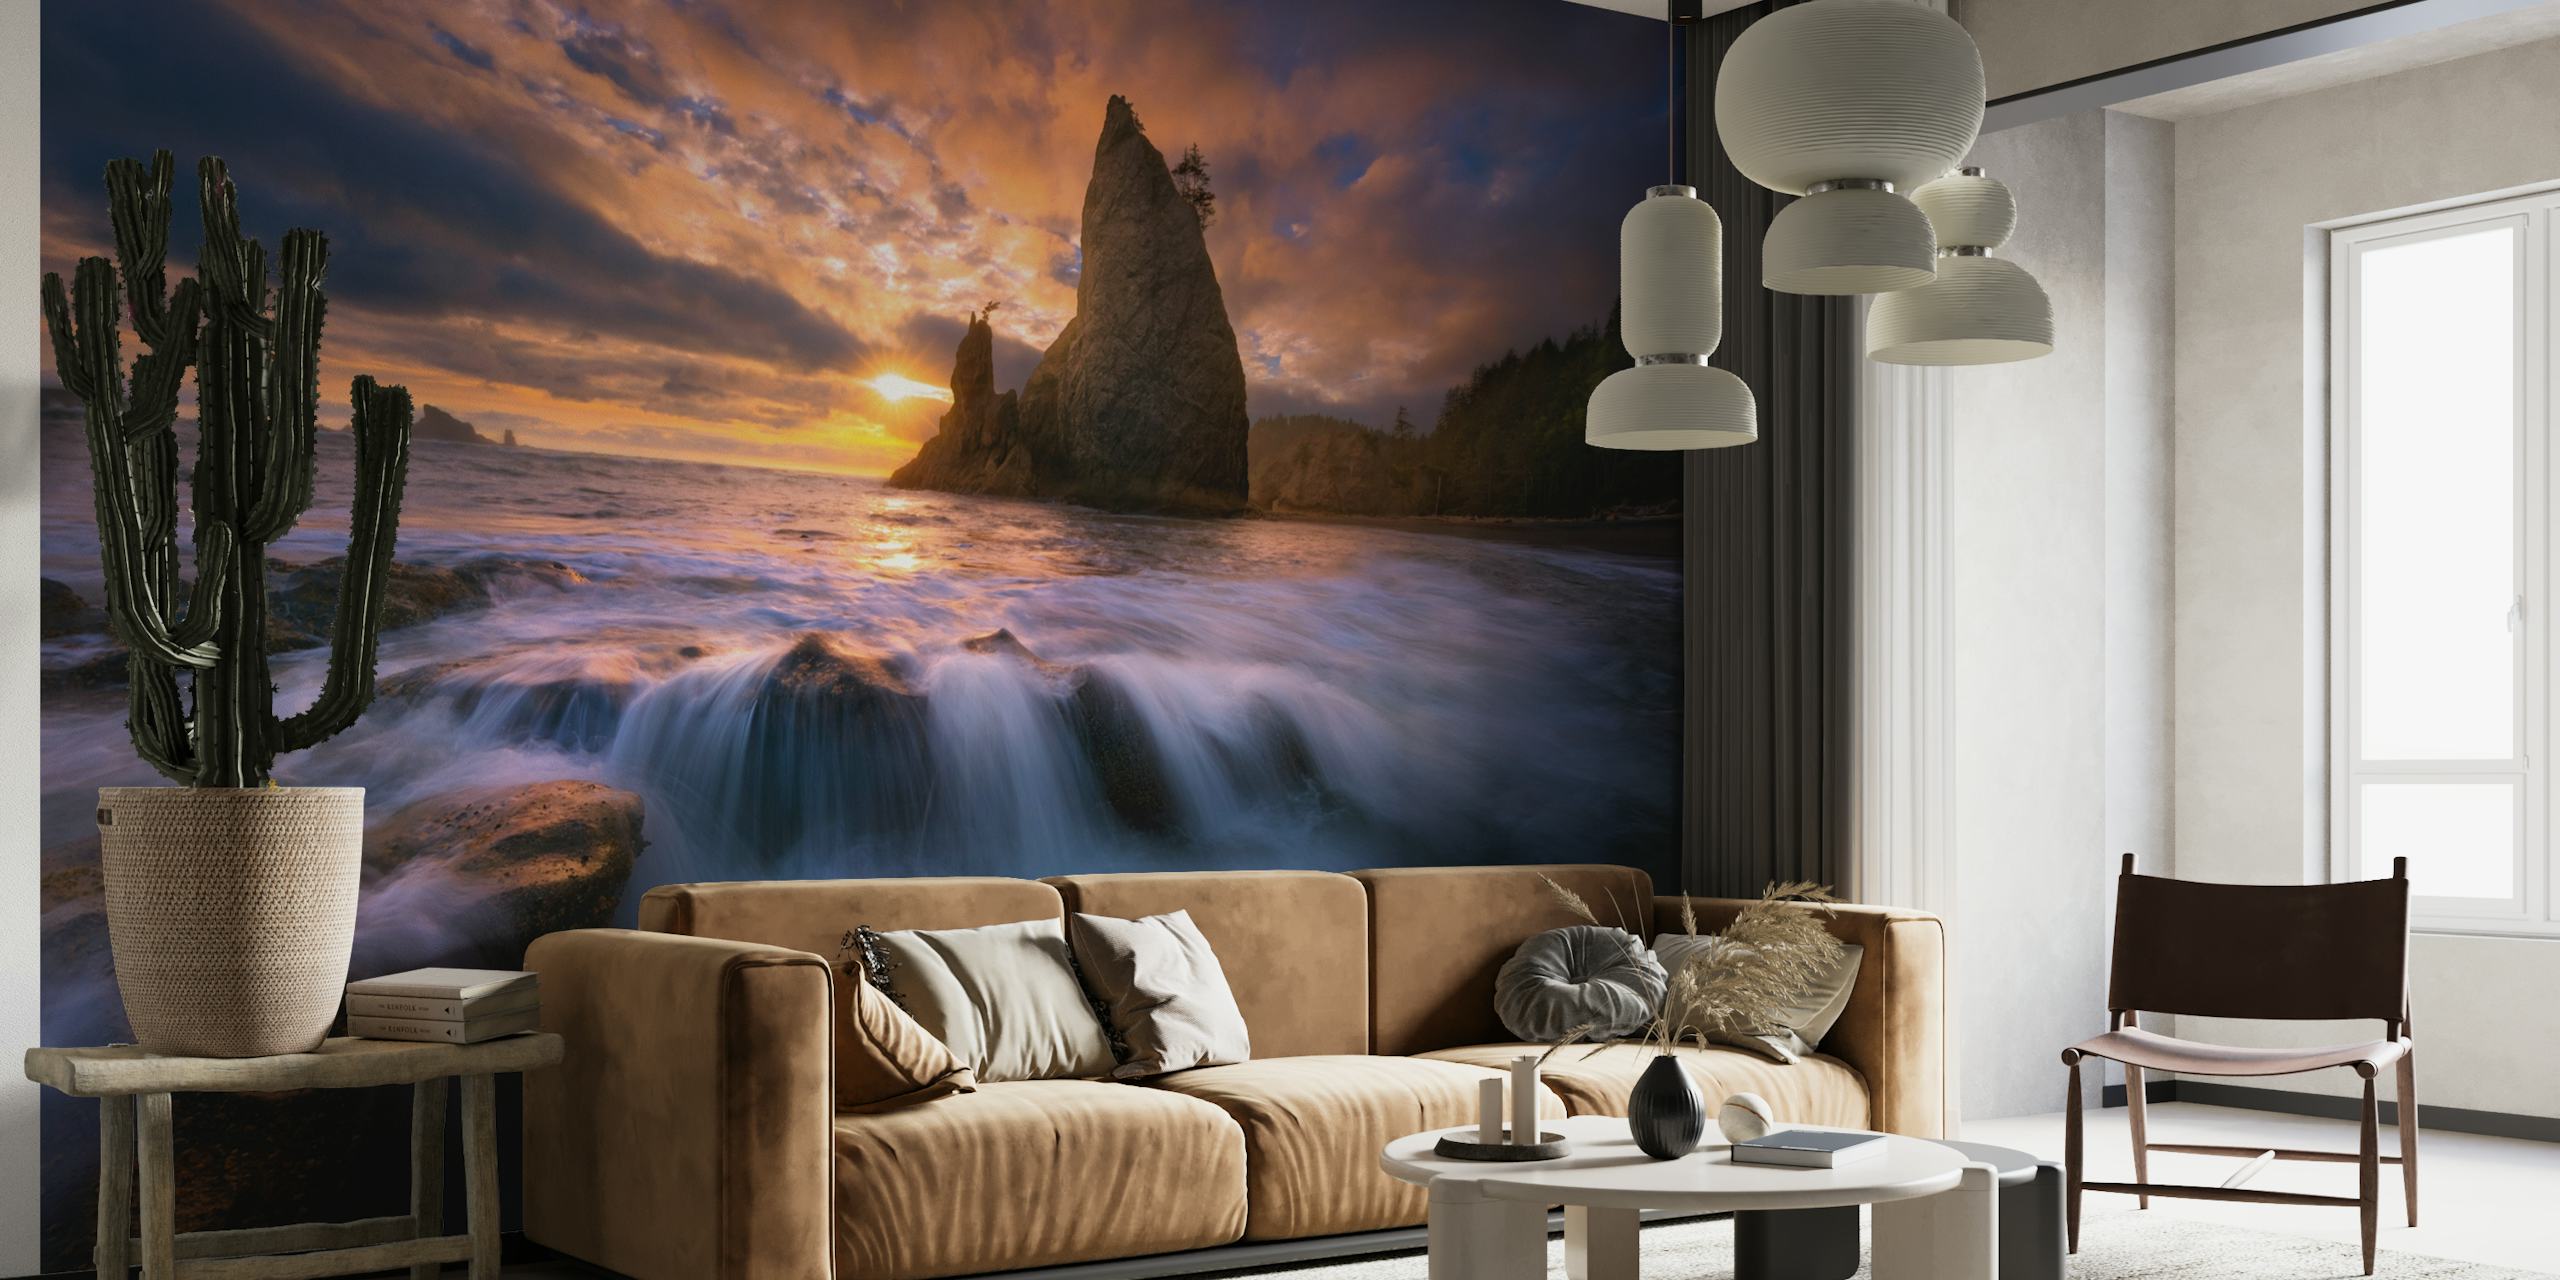 Solopgang havbillede vægmaleri med klippeformationer og strømmende vand